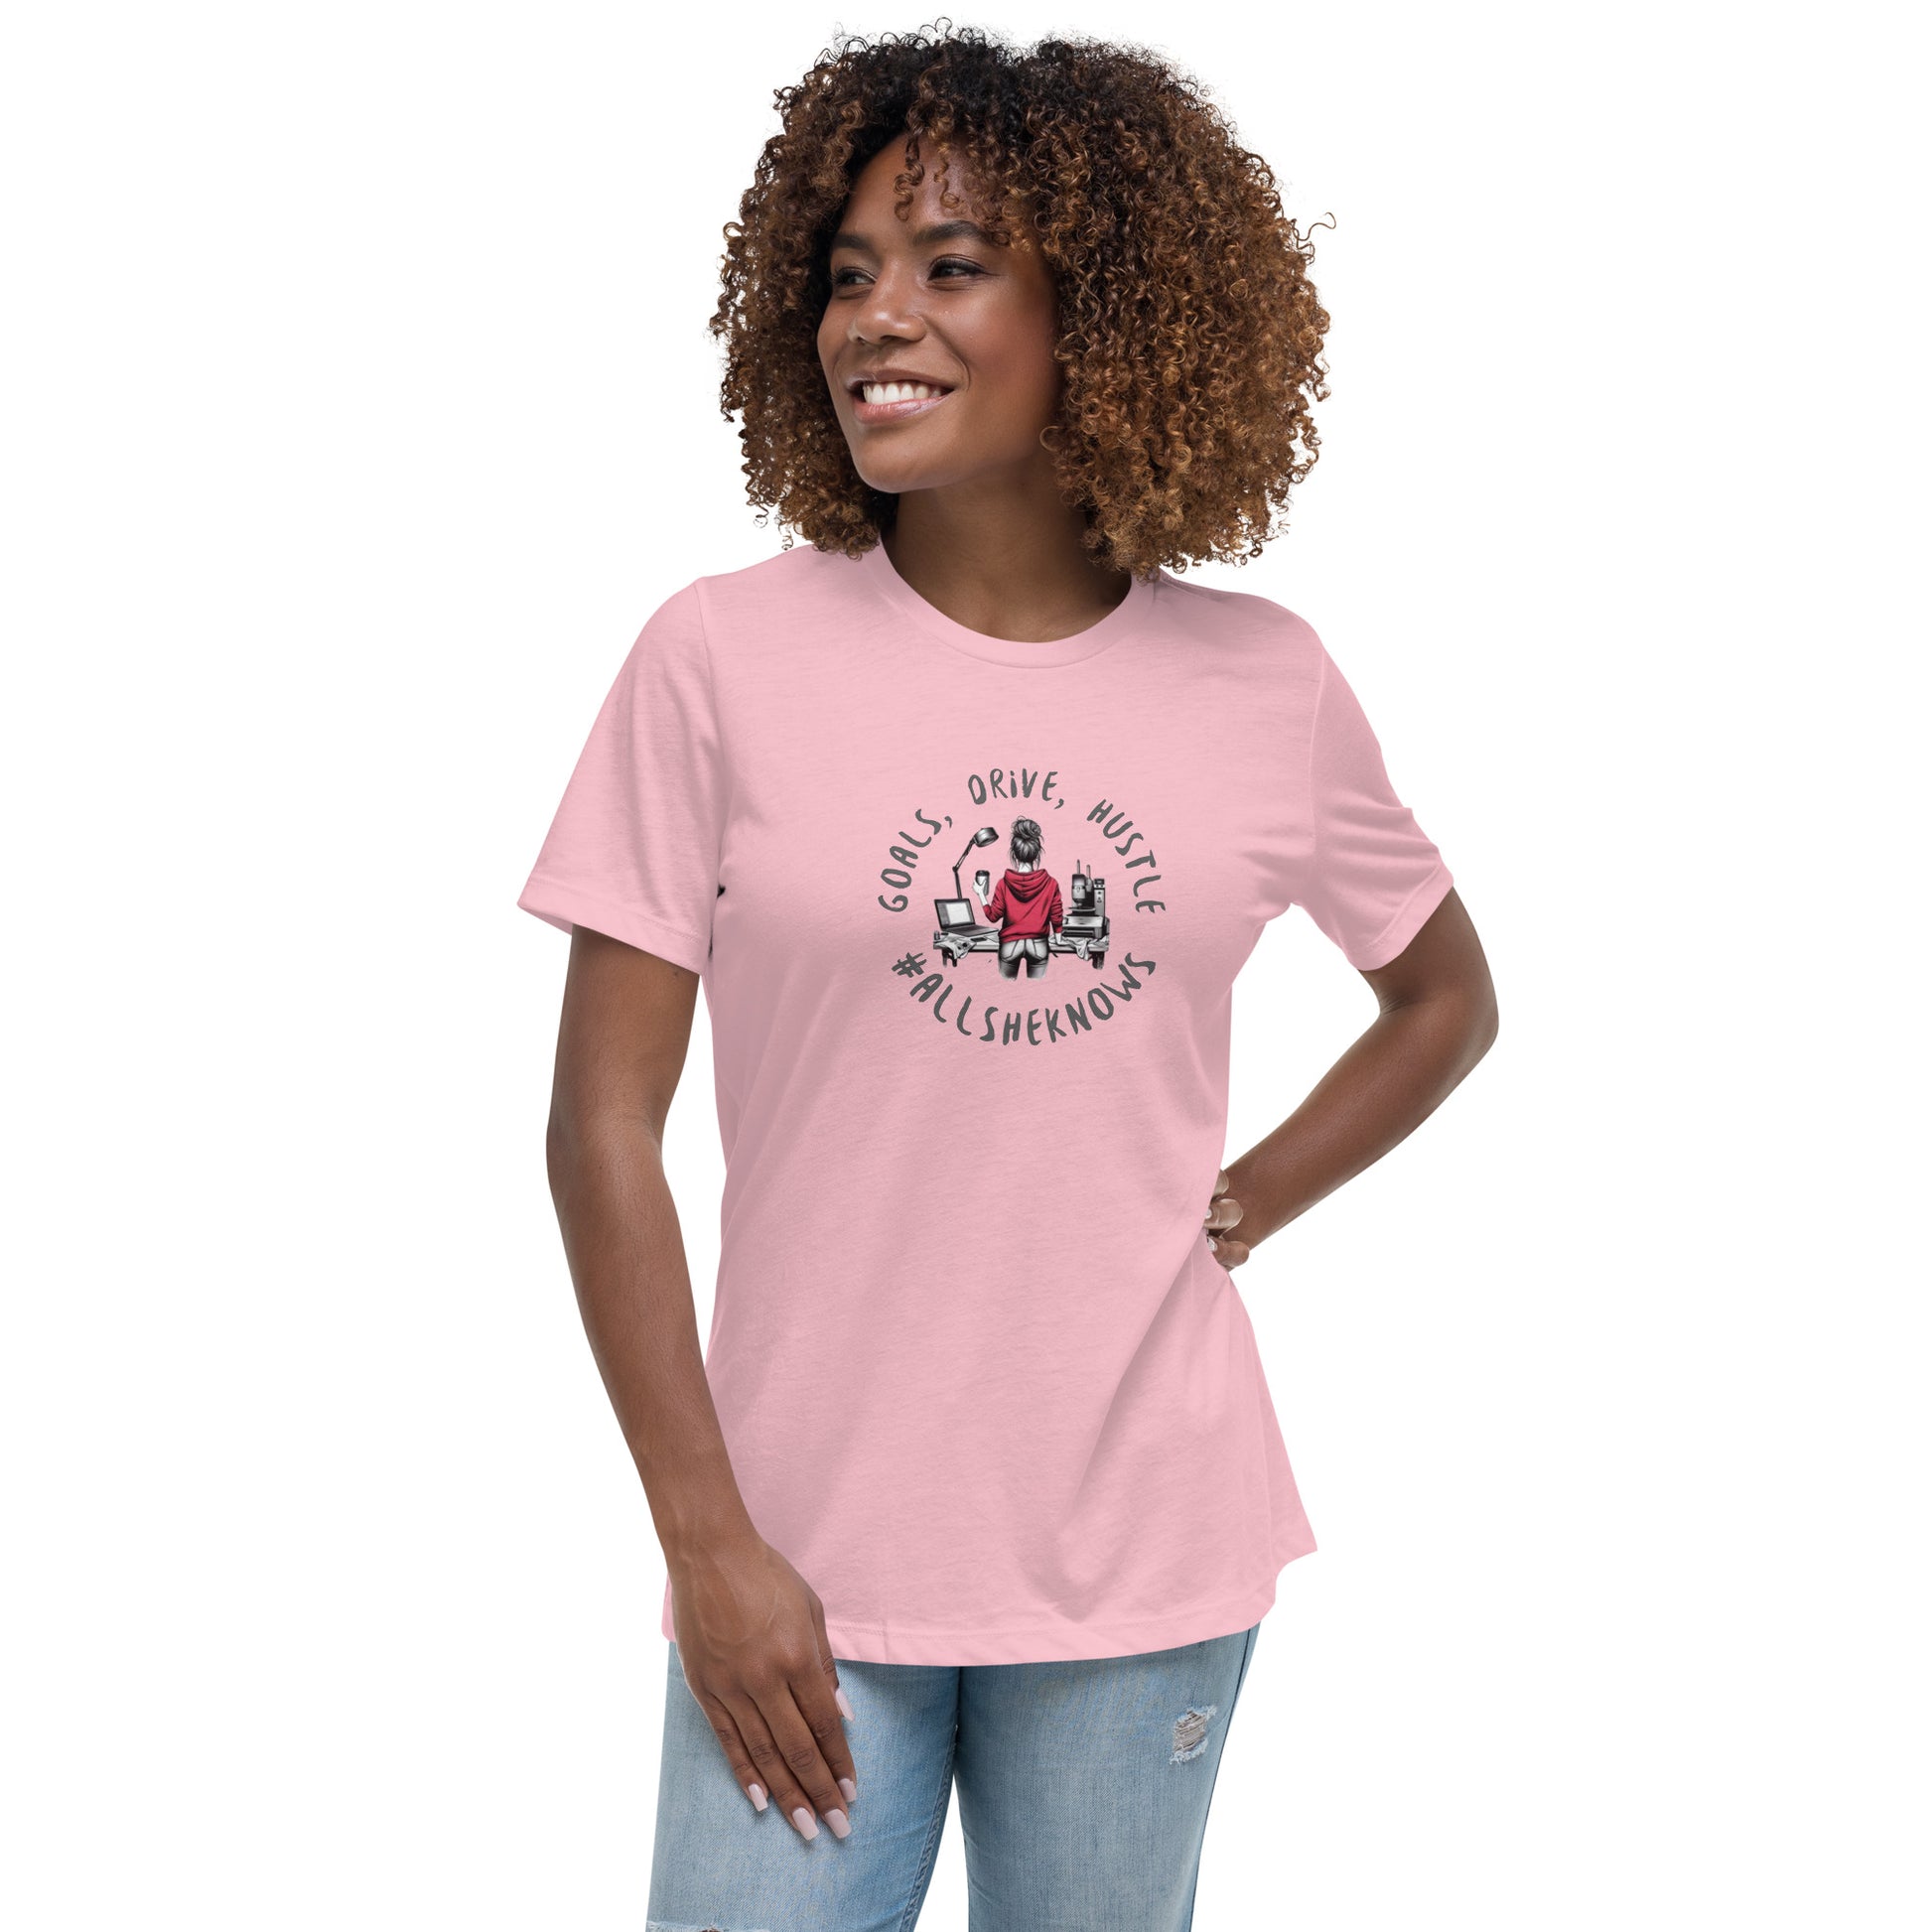 Goals Drive & Hustle Women's Relaxed T-Shirt CedarHill Country Market